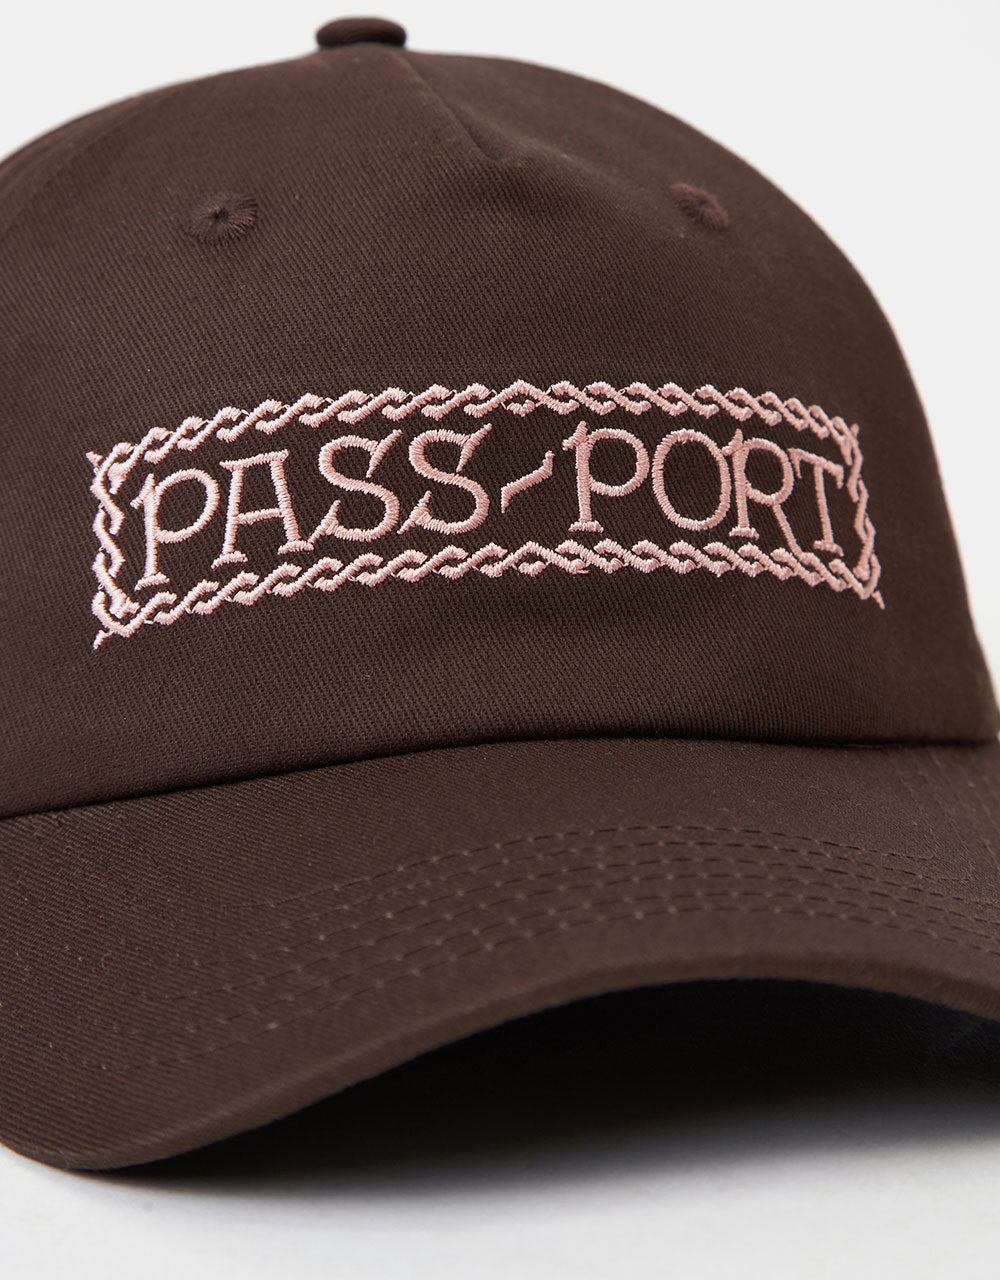 Pass Port Invasive Logo Freight Cap - Choc